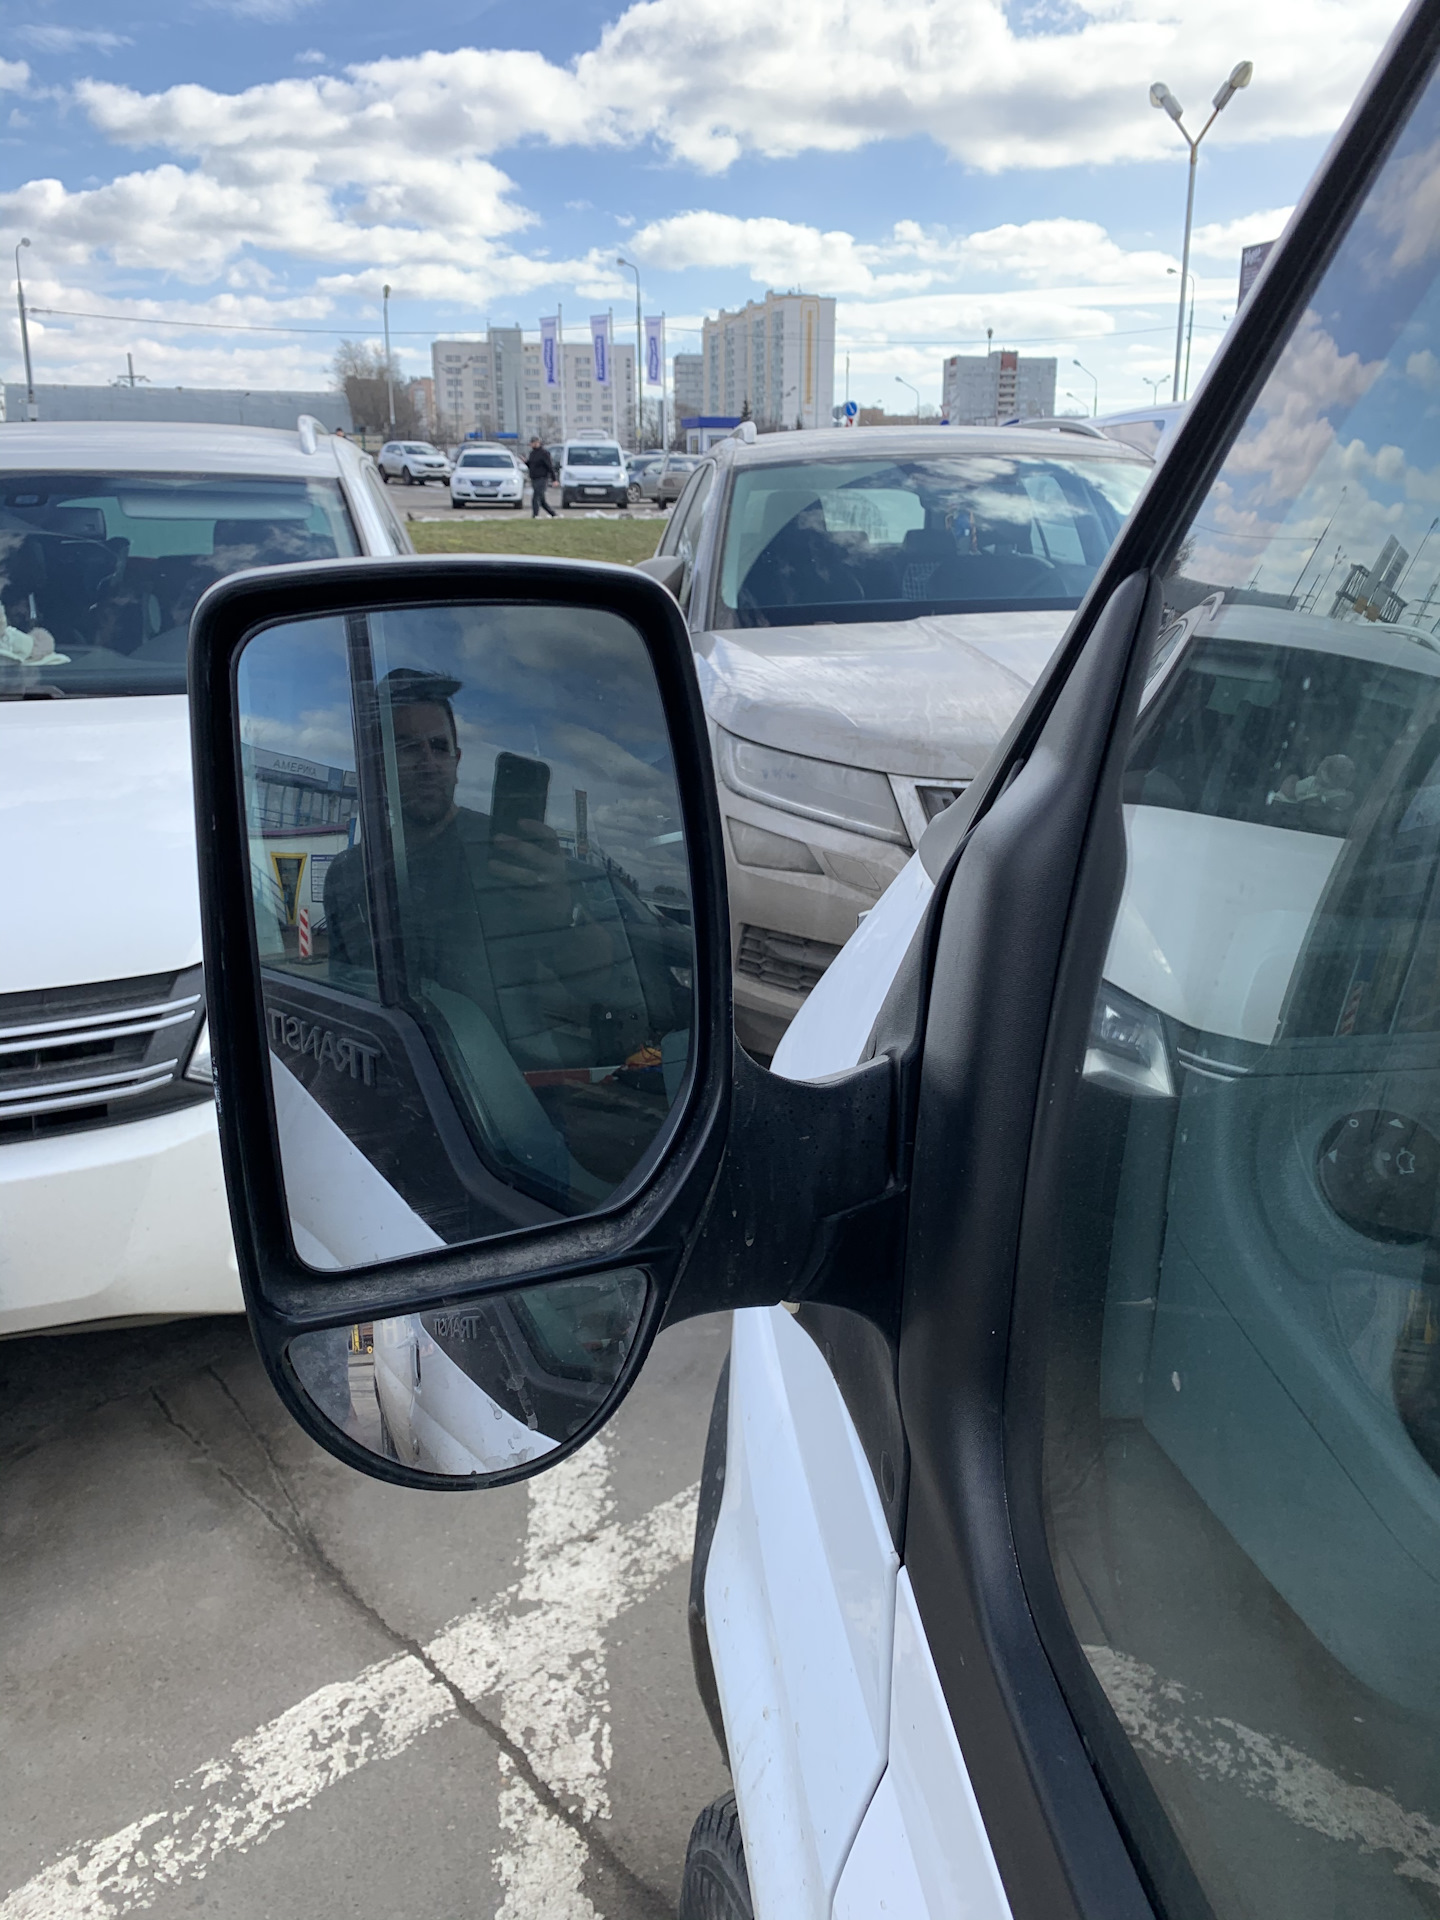 Купить зеркало на форд транзит. Зеркальный элемент Форд Транзит 2020. Зеркальный элемент с подогревом Форд Транзит 2008. Зеркальный элемент с подогревом Форд Транзит 2020. Зеркальный элемент Нижний Форд Транзит 2019.